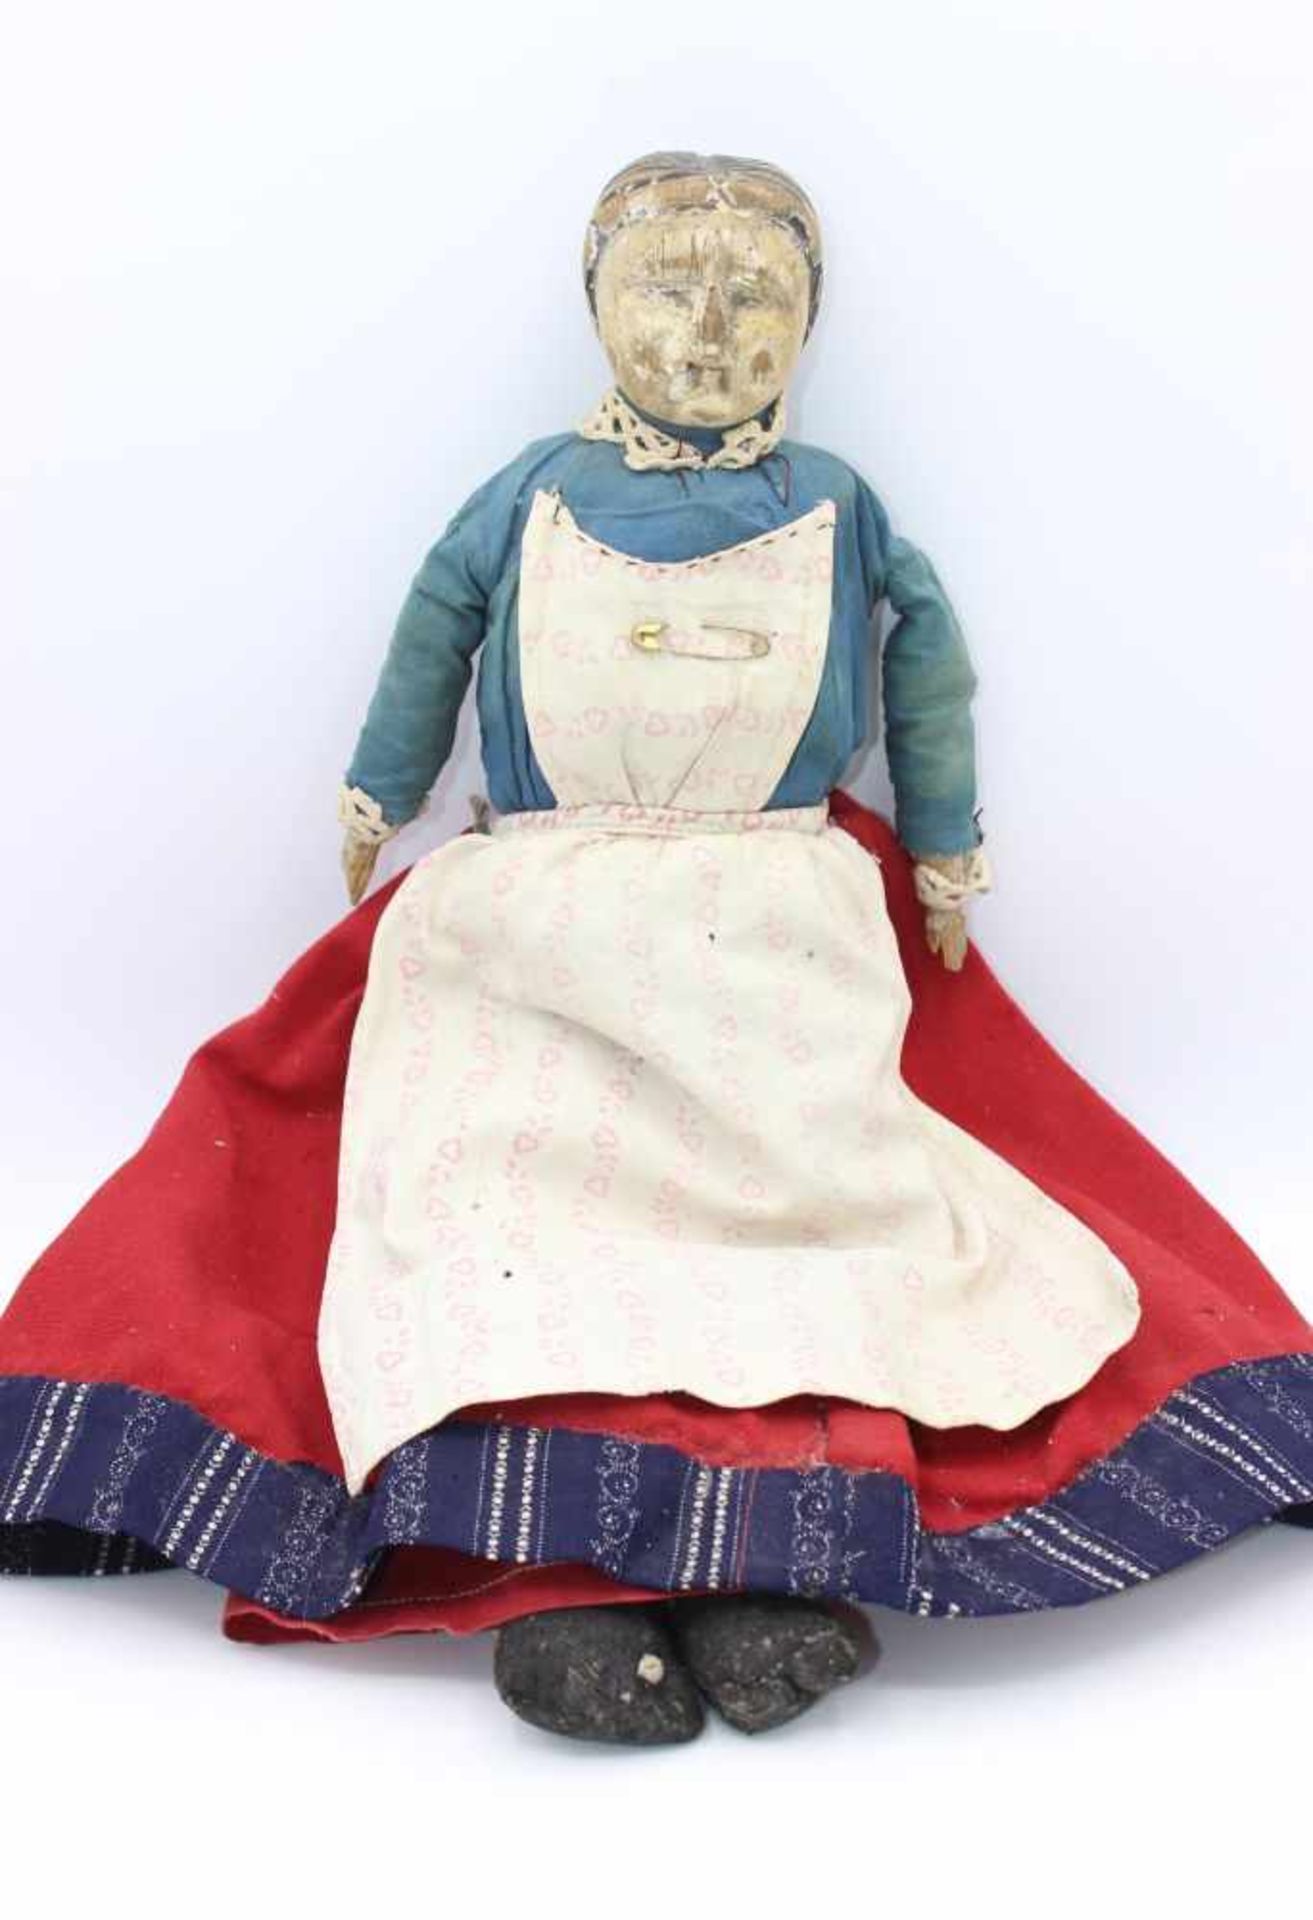 Spielzeug - Alte Puppe Kopf Holz geschnitzt und Reste alter Fassung, Stoffkorpus mit Strohfüllung,